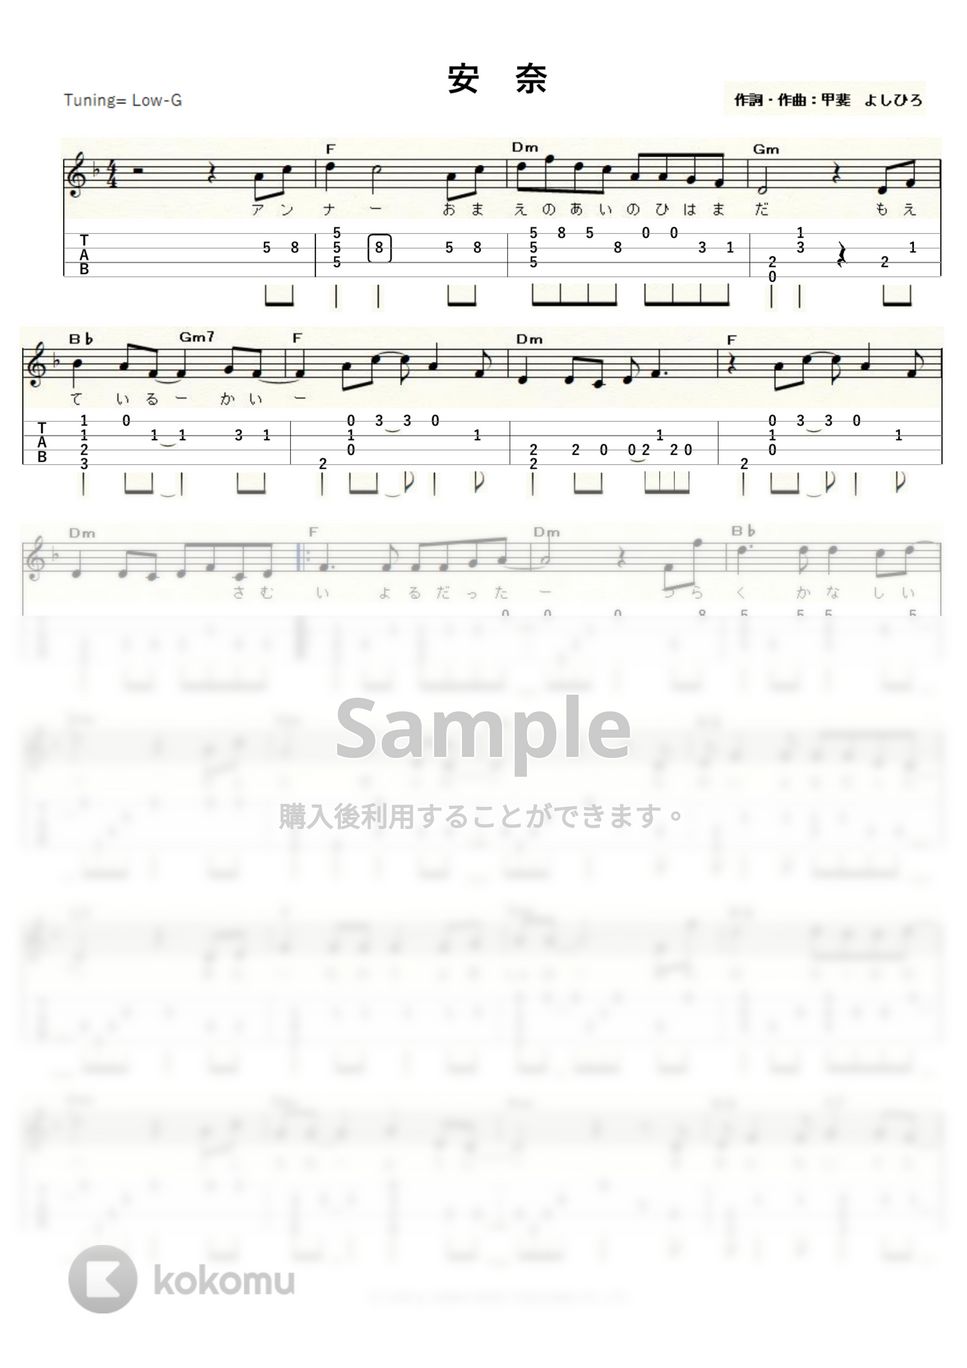 甲斐バンド - 安奈 (Low-G) by ukulelepapa